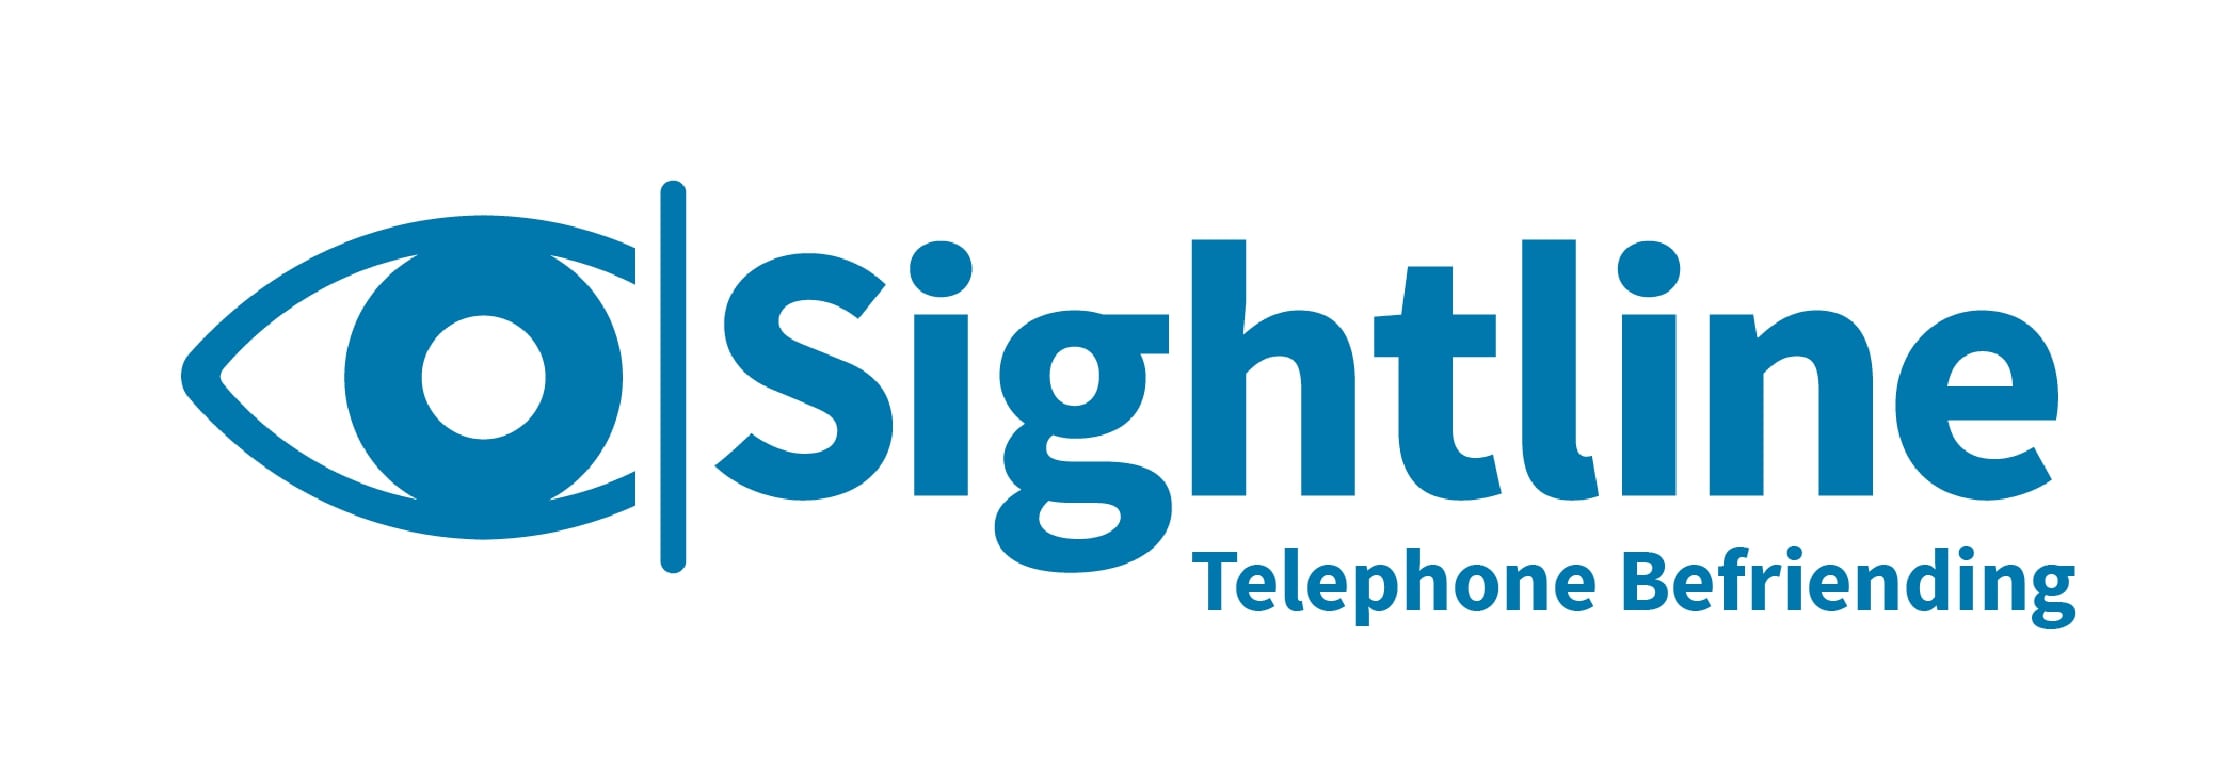 Sightline Telephone Befriending logo